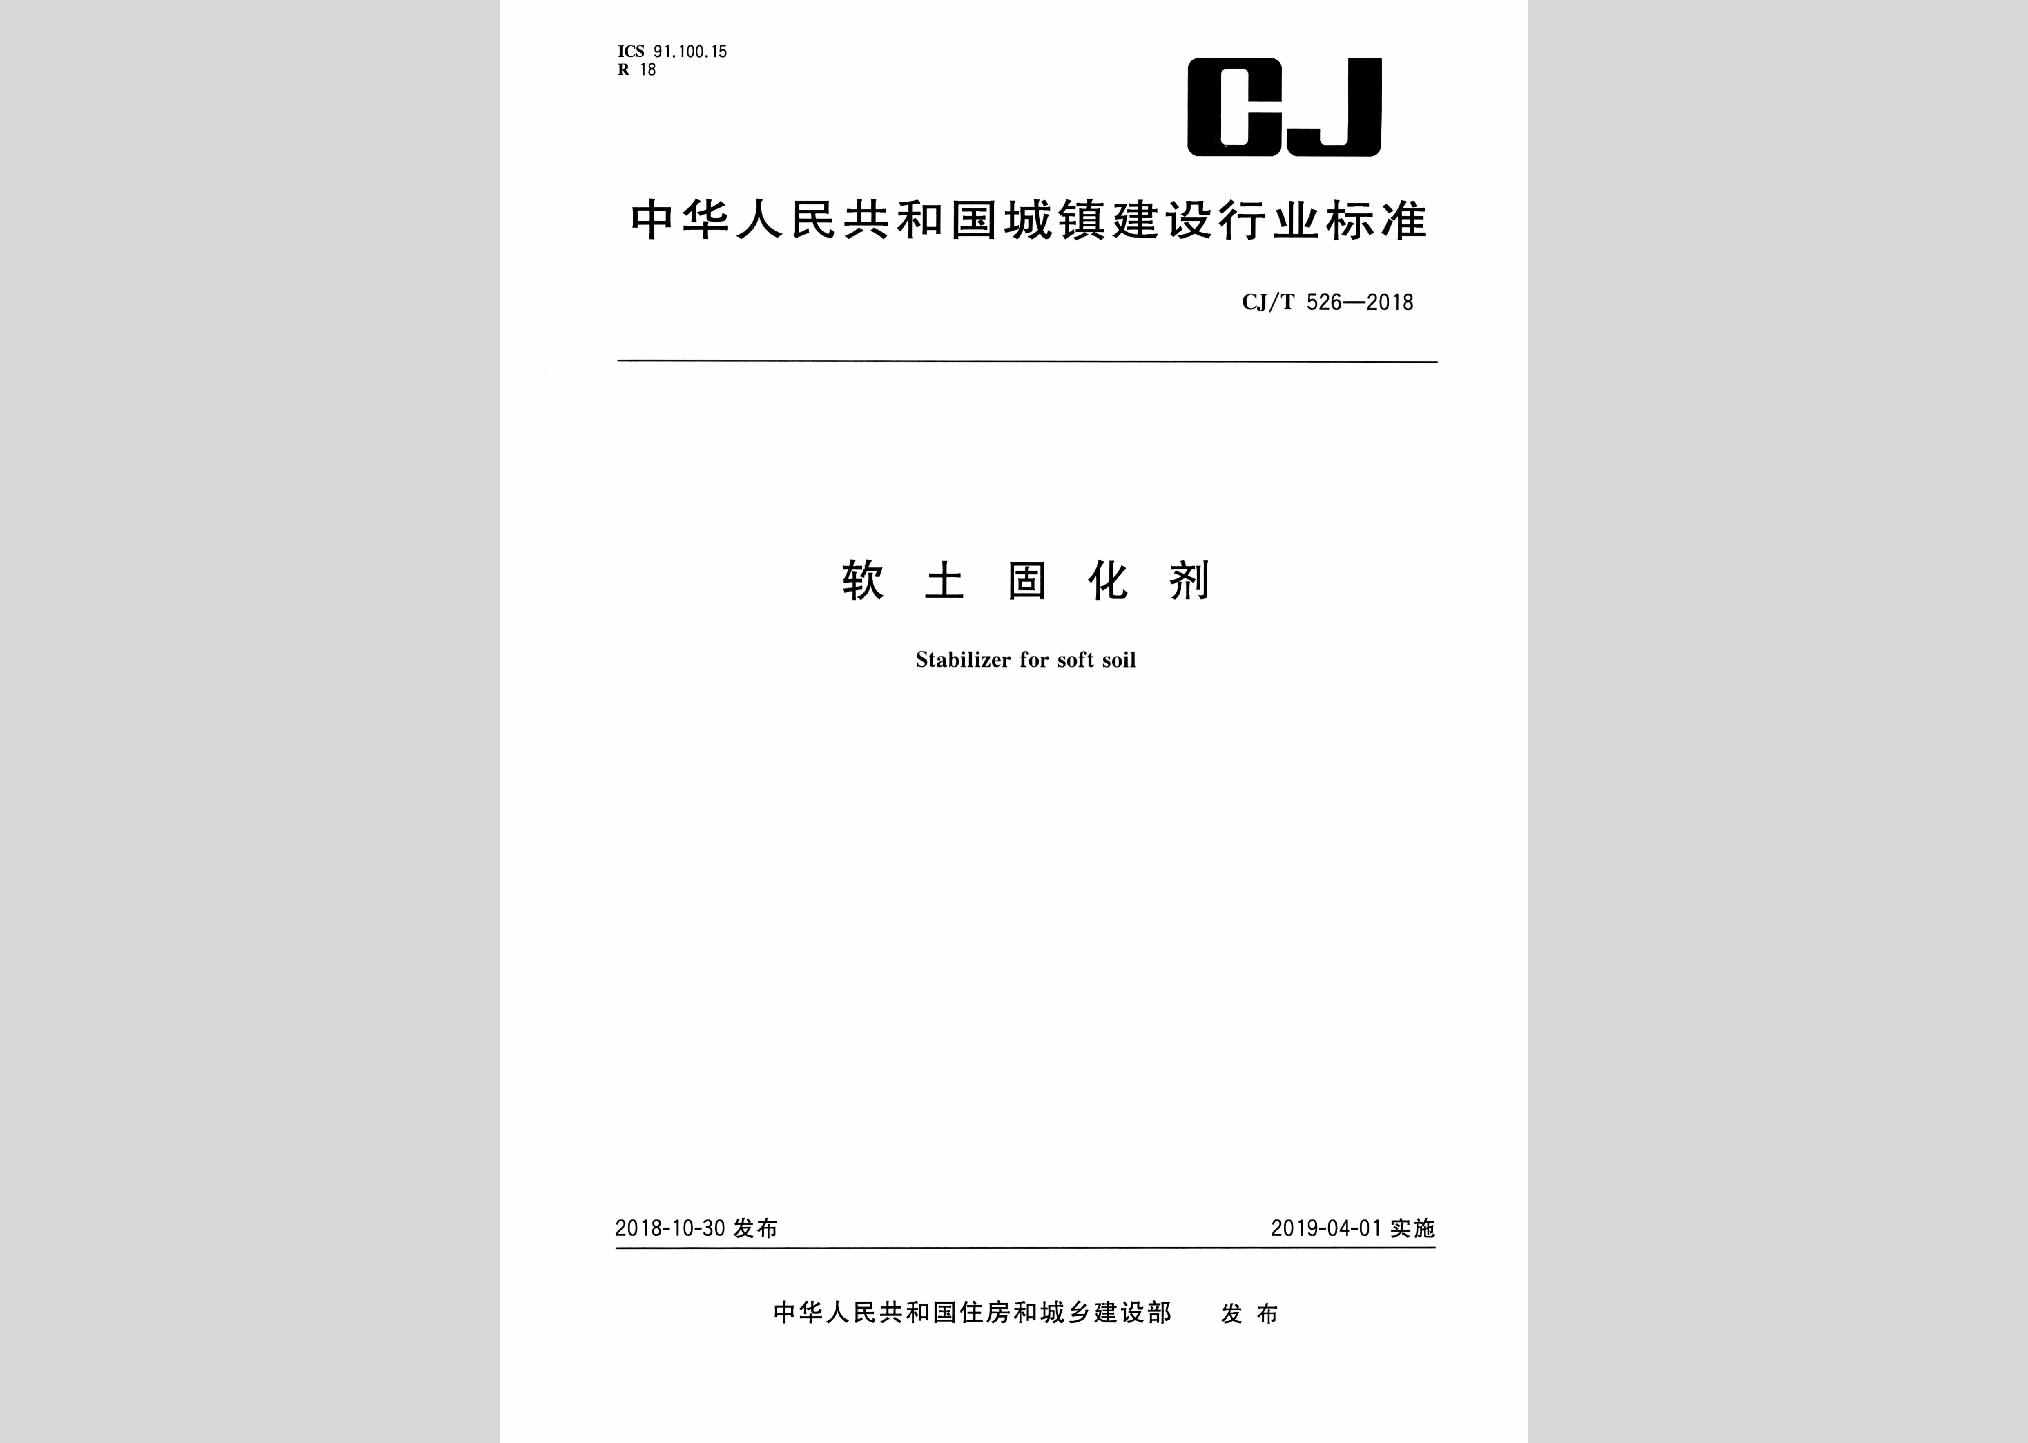 CJ/T526-2018：软土固化剂